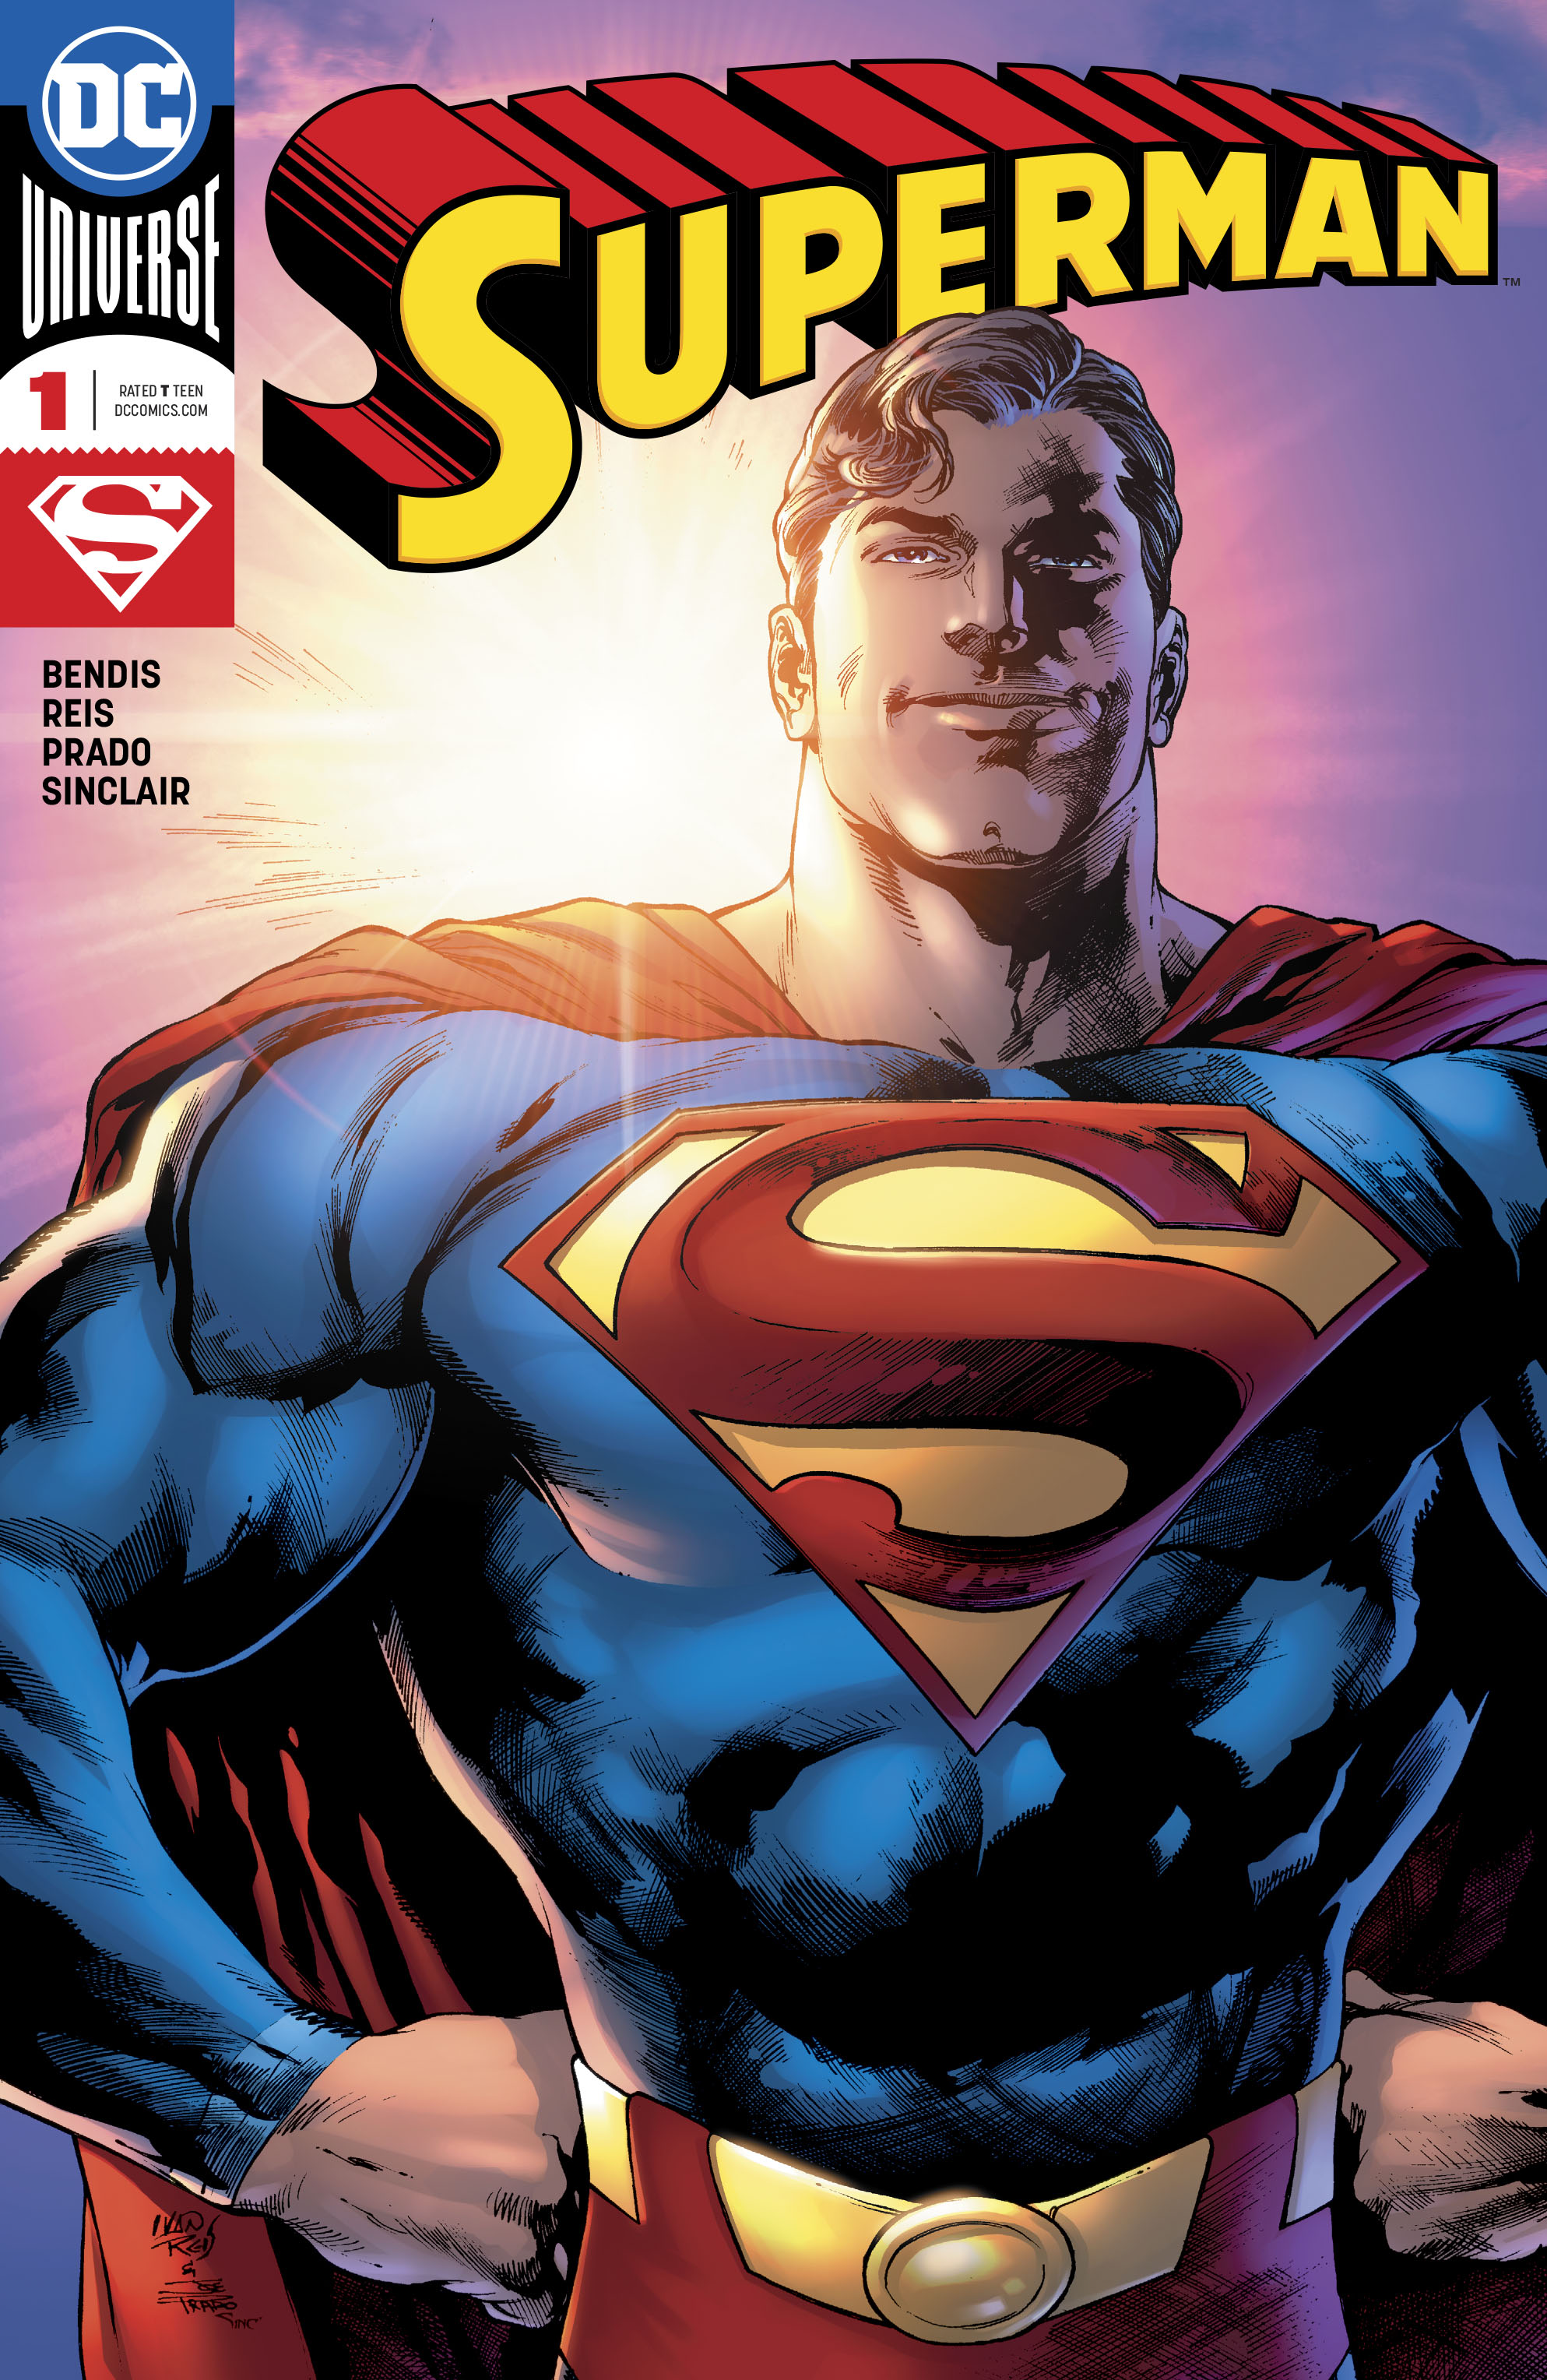 Read superman comics online